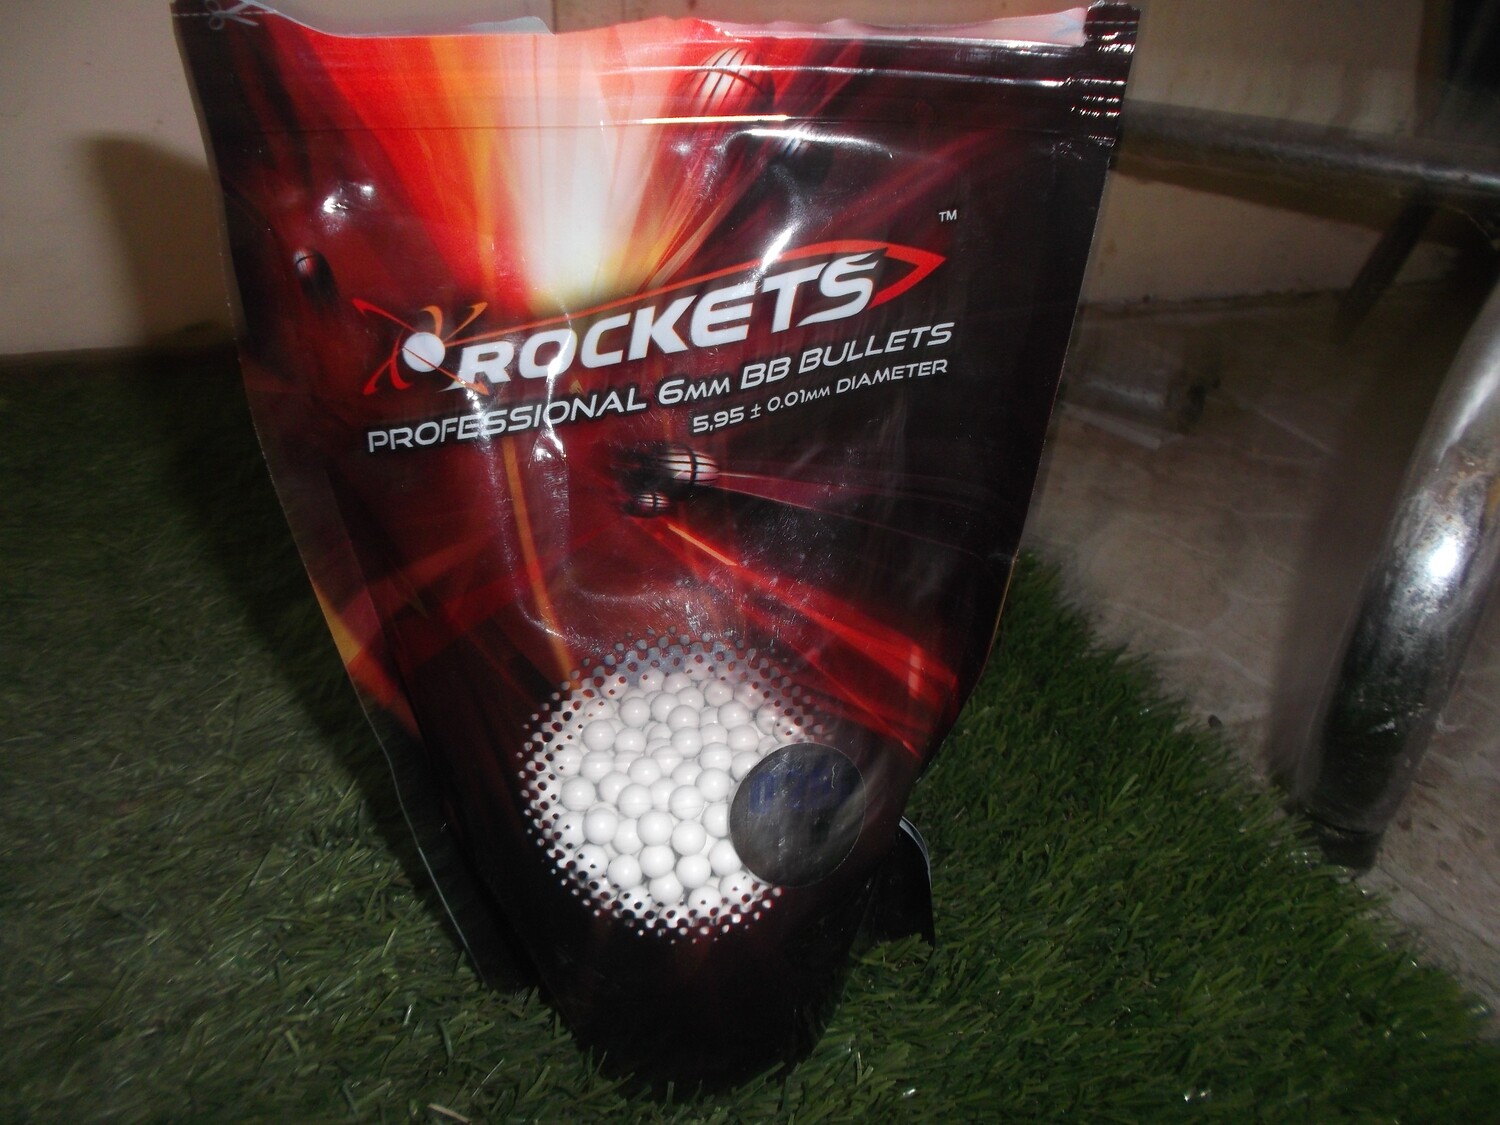  Consumabili Pallini 6mm lucidati gr.0,20 0,500 kg  2000 pz Rockets professional